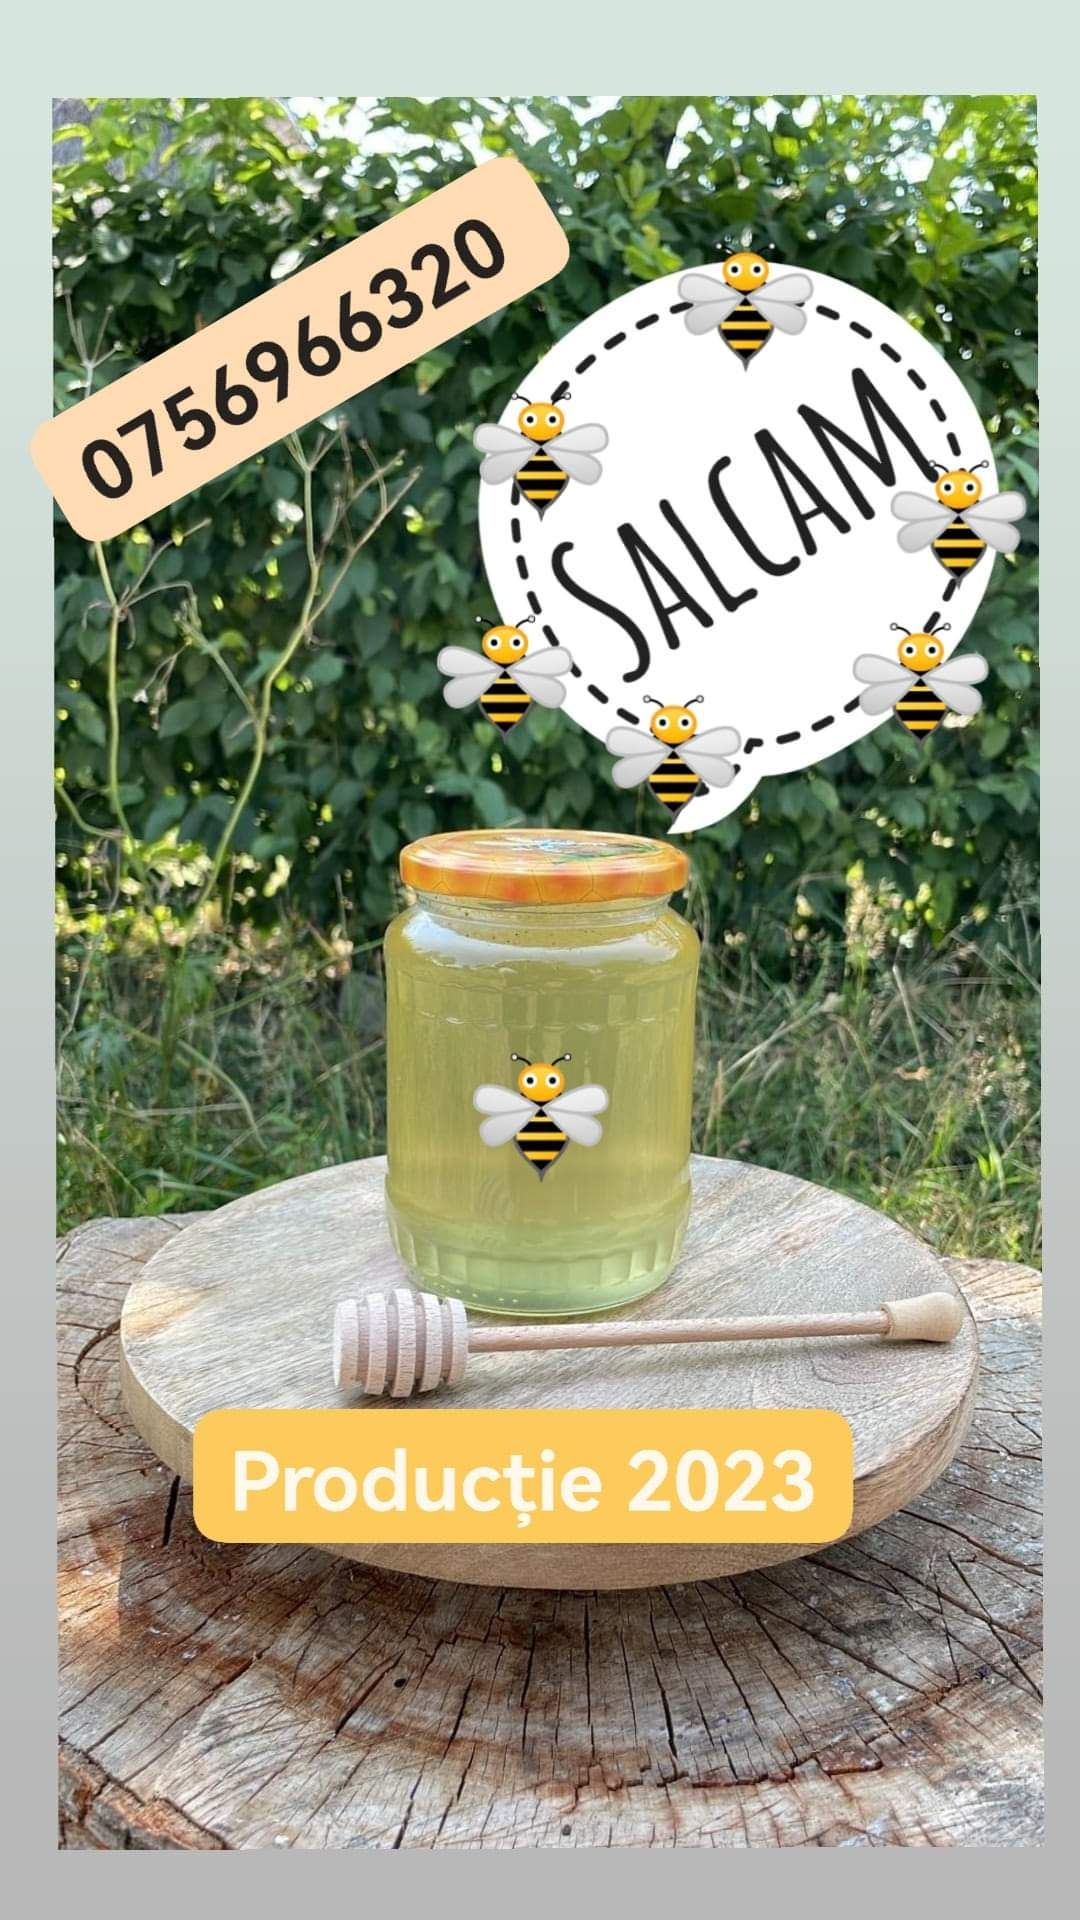 Vând miere de albine din producția 2023